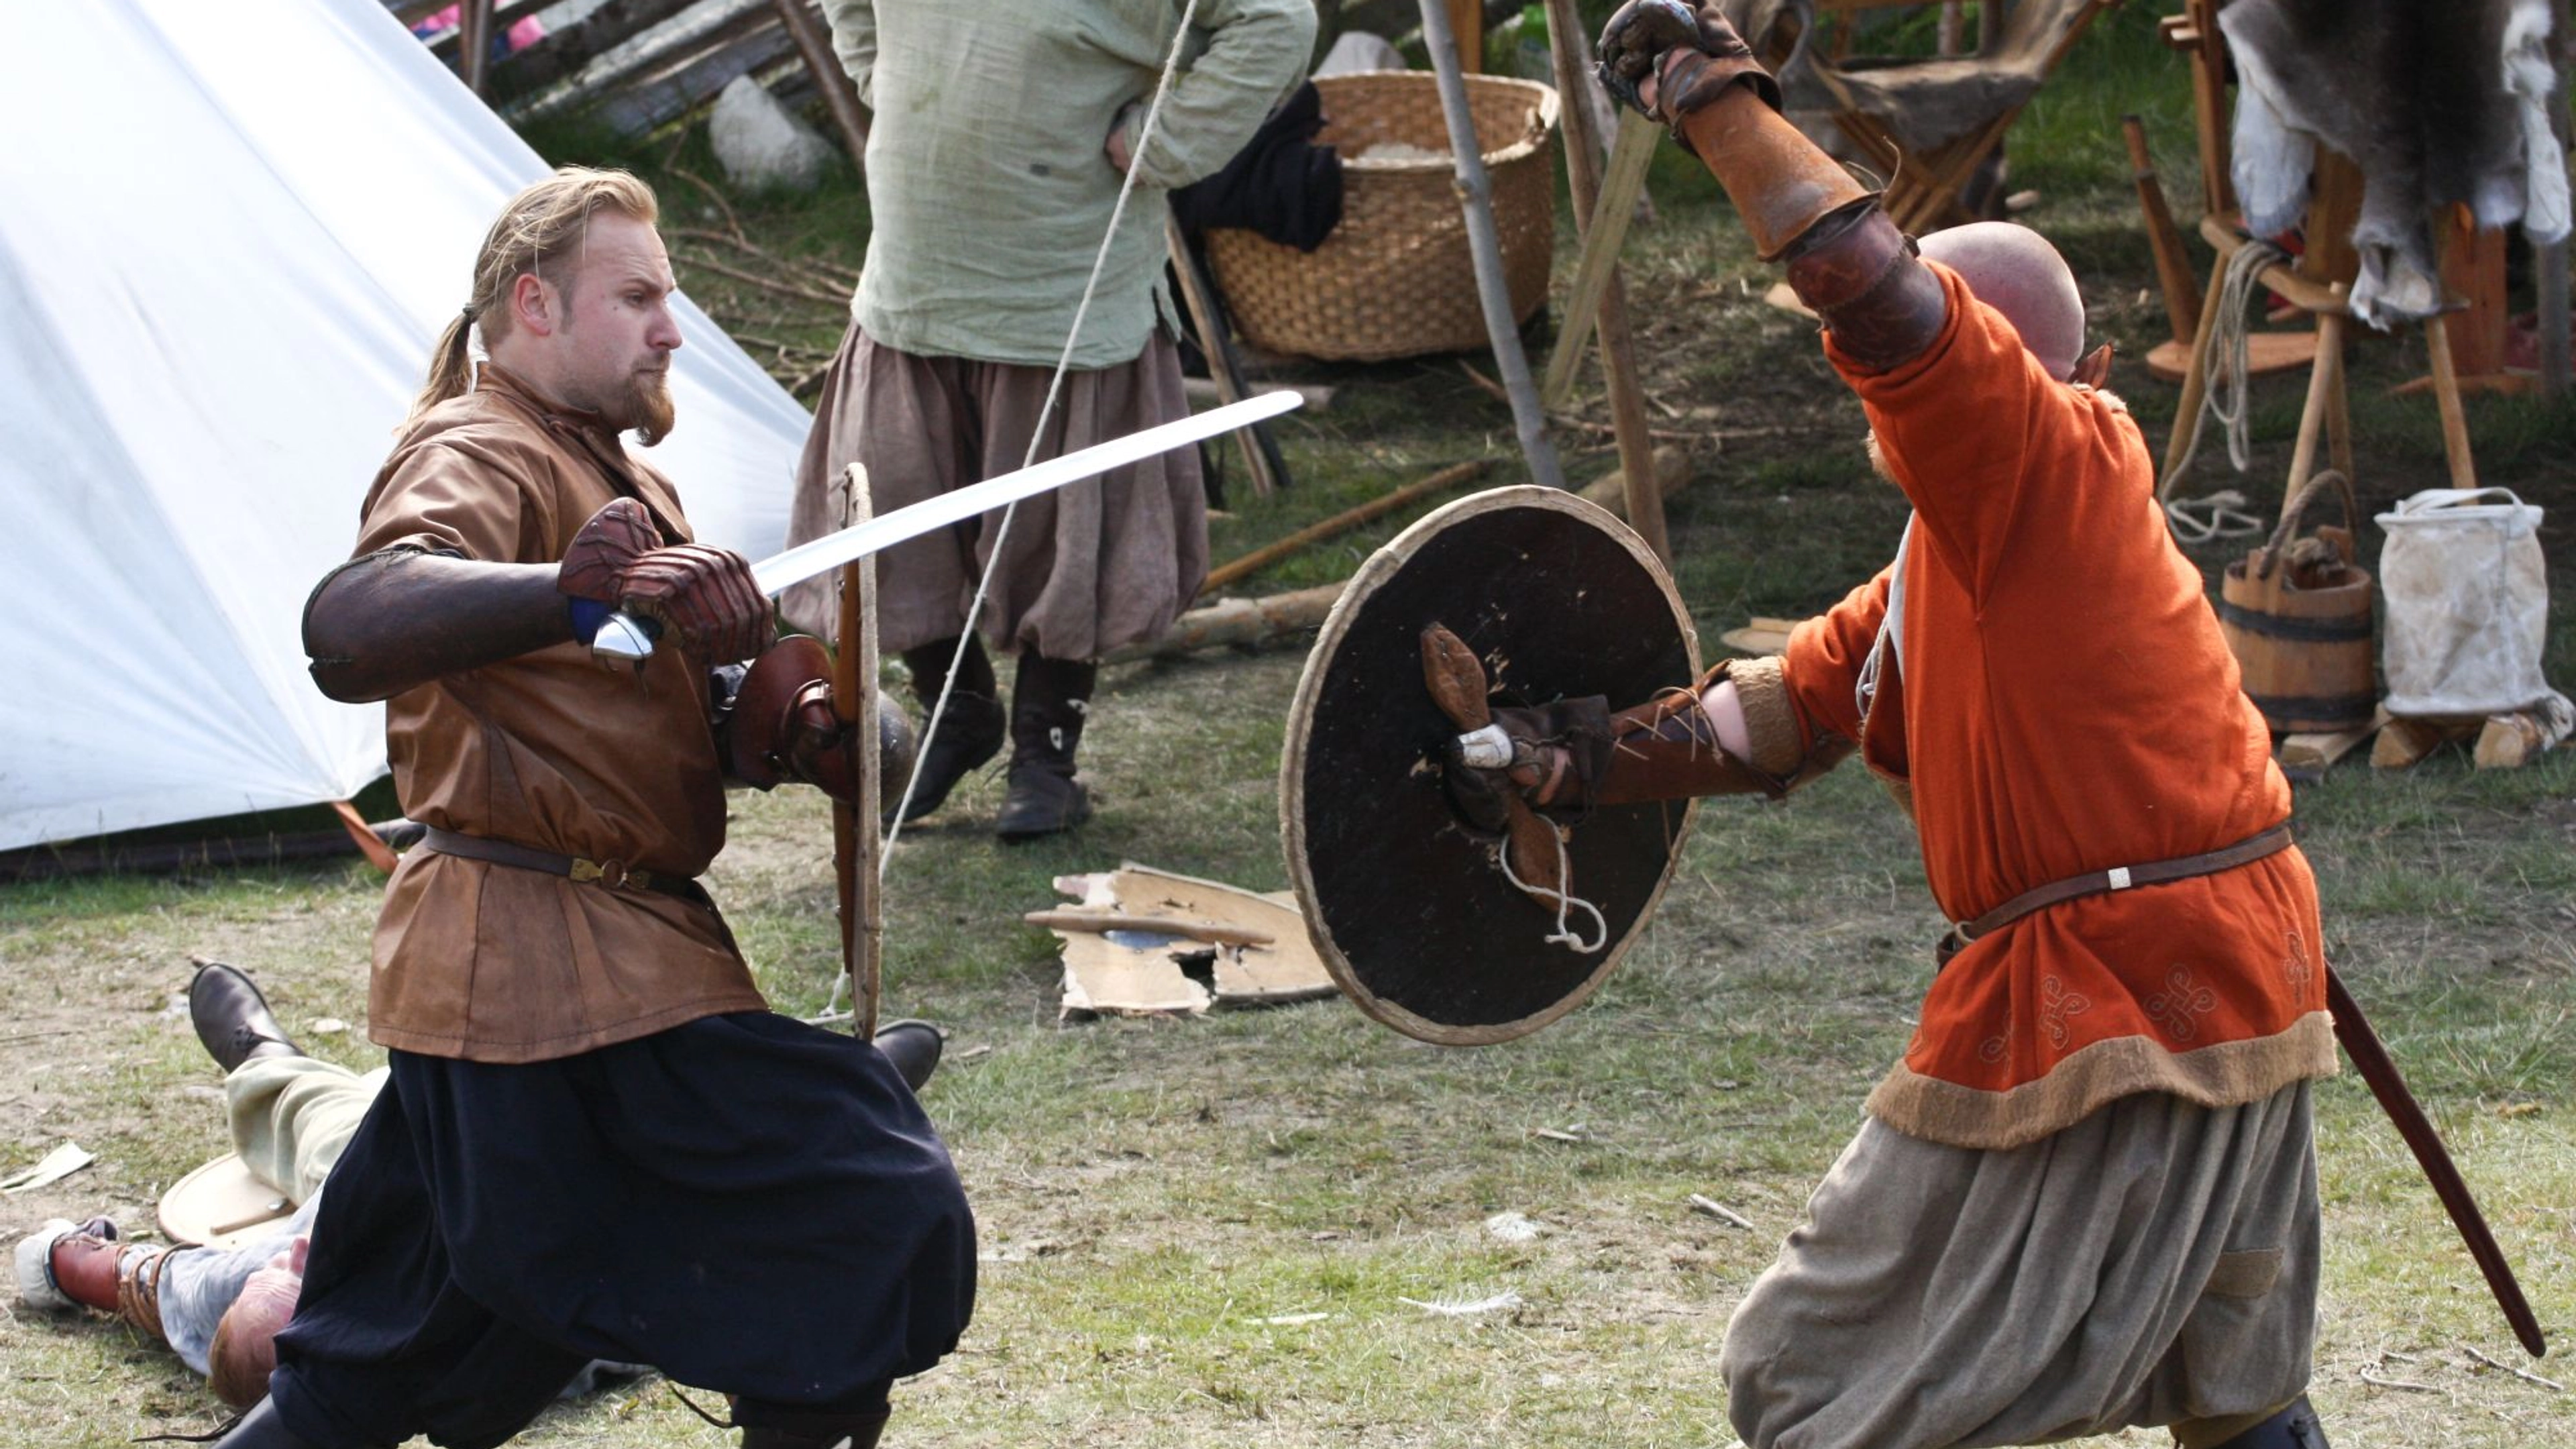 Vikings in combat